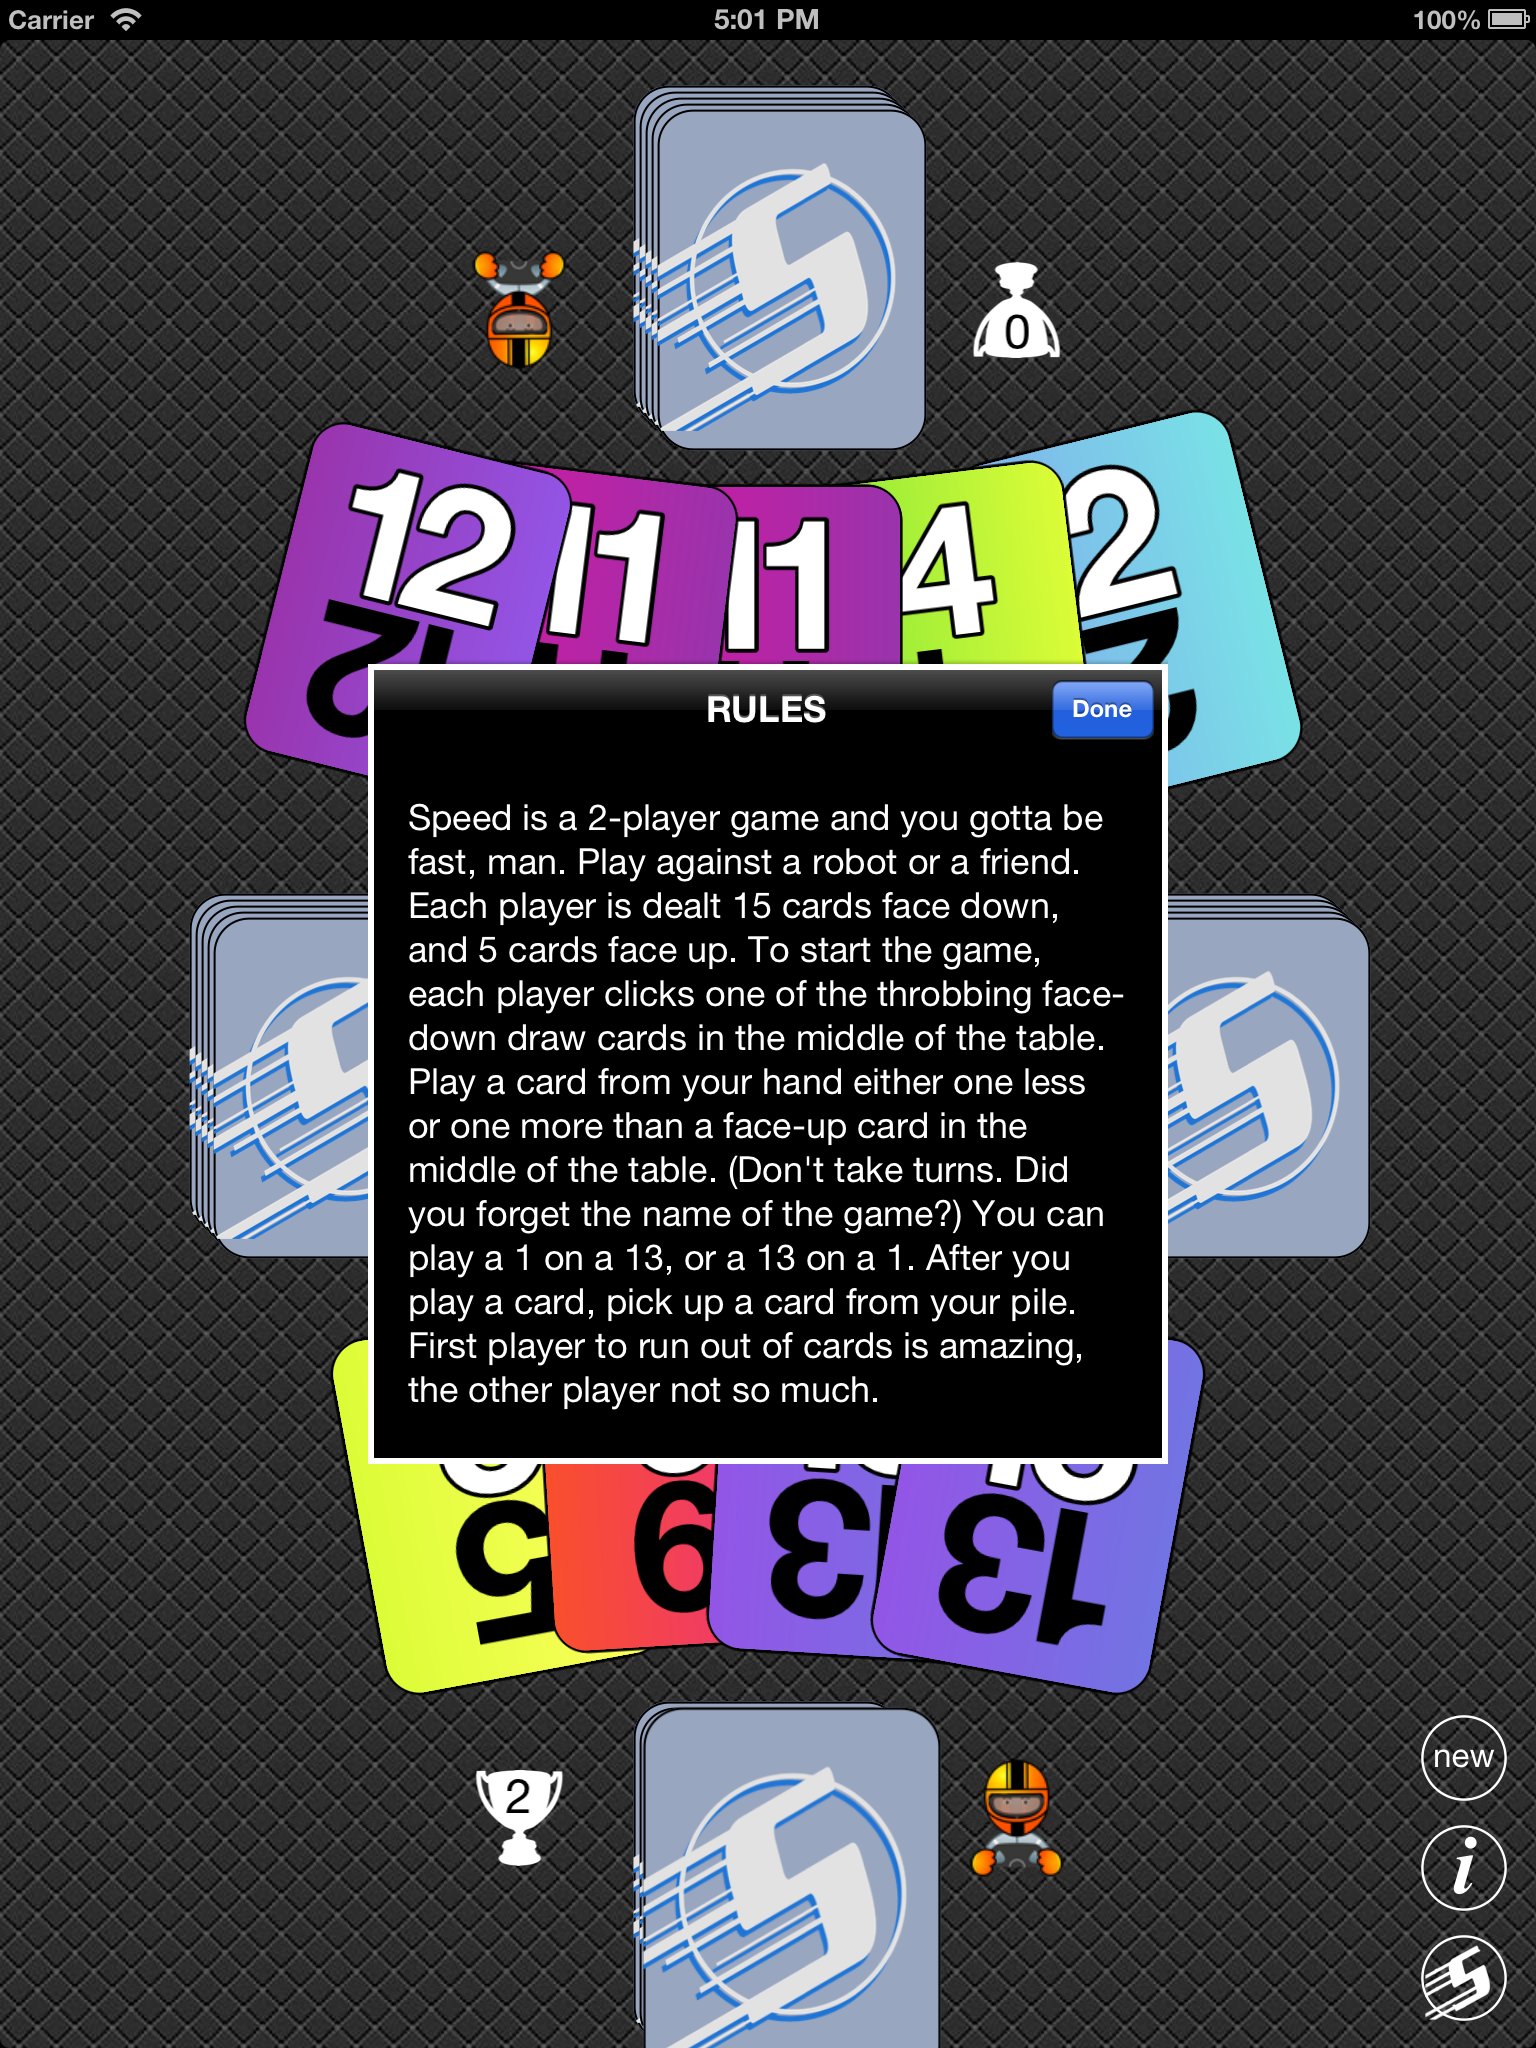 iOS Simulator Screen shot Jul 30, 2013 5.01.48 PM.png